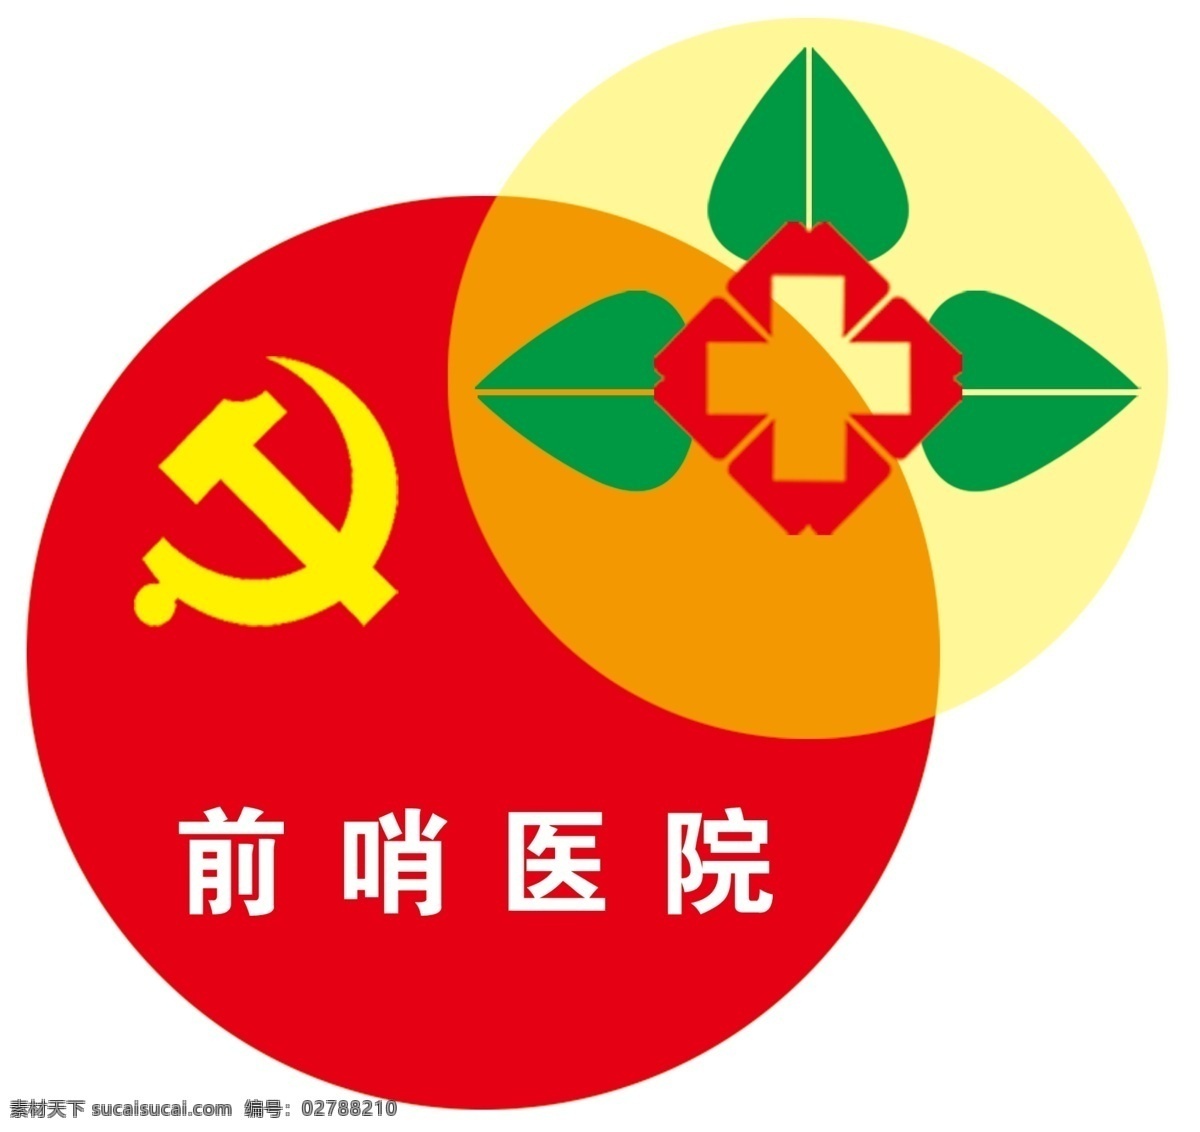 医院 党建 品牌 标志 logo logo设计